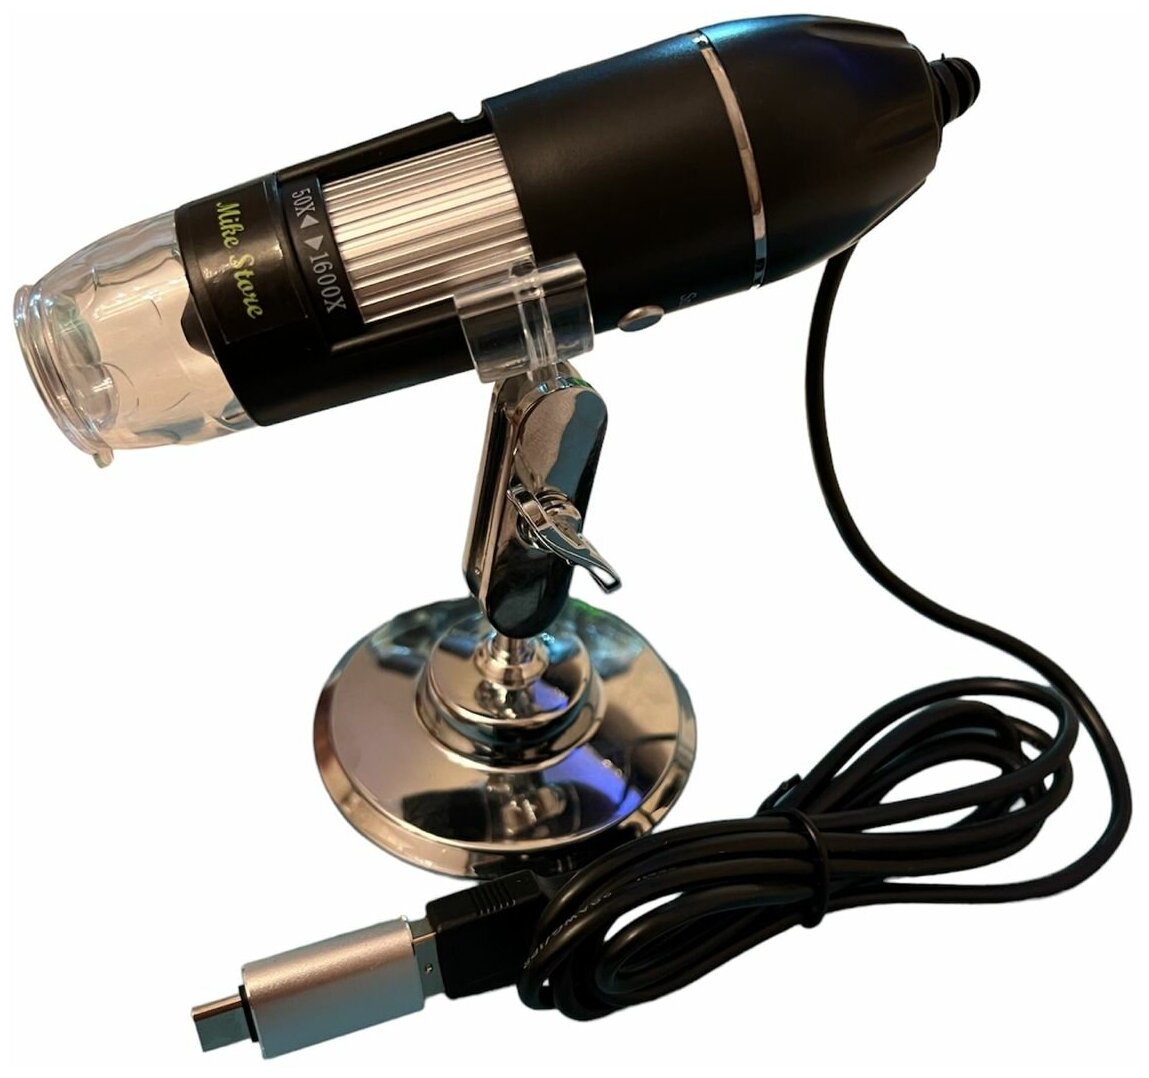 Портативный цифровой микроскоп с камерой Mike Store KM-06 -/USB микроскоп/увеличение до 1600х/для Android/для Windows.